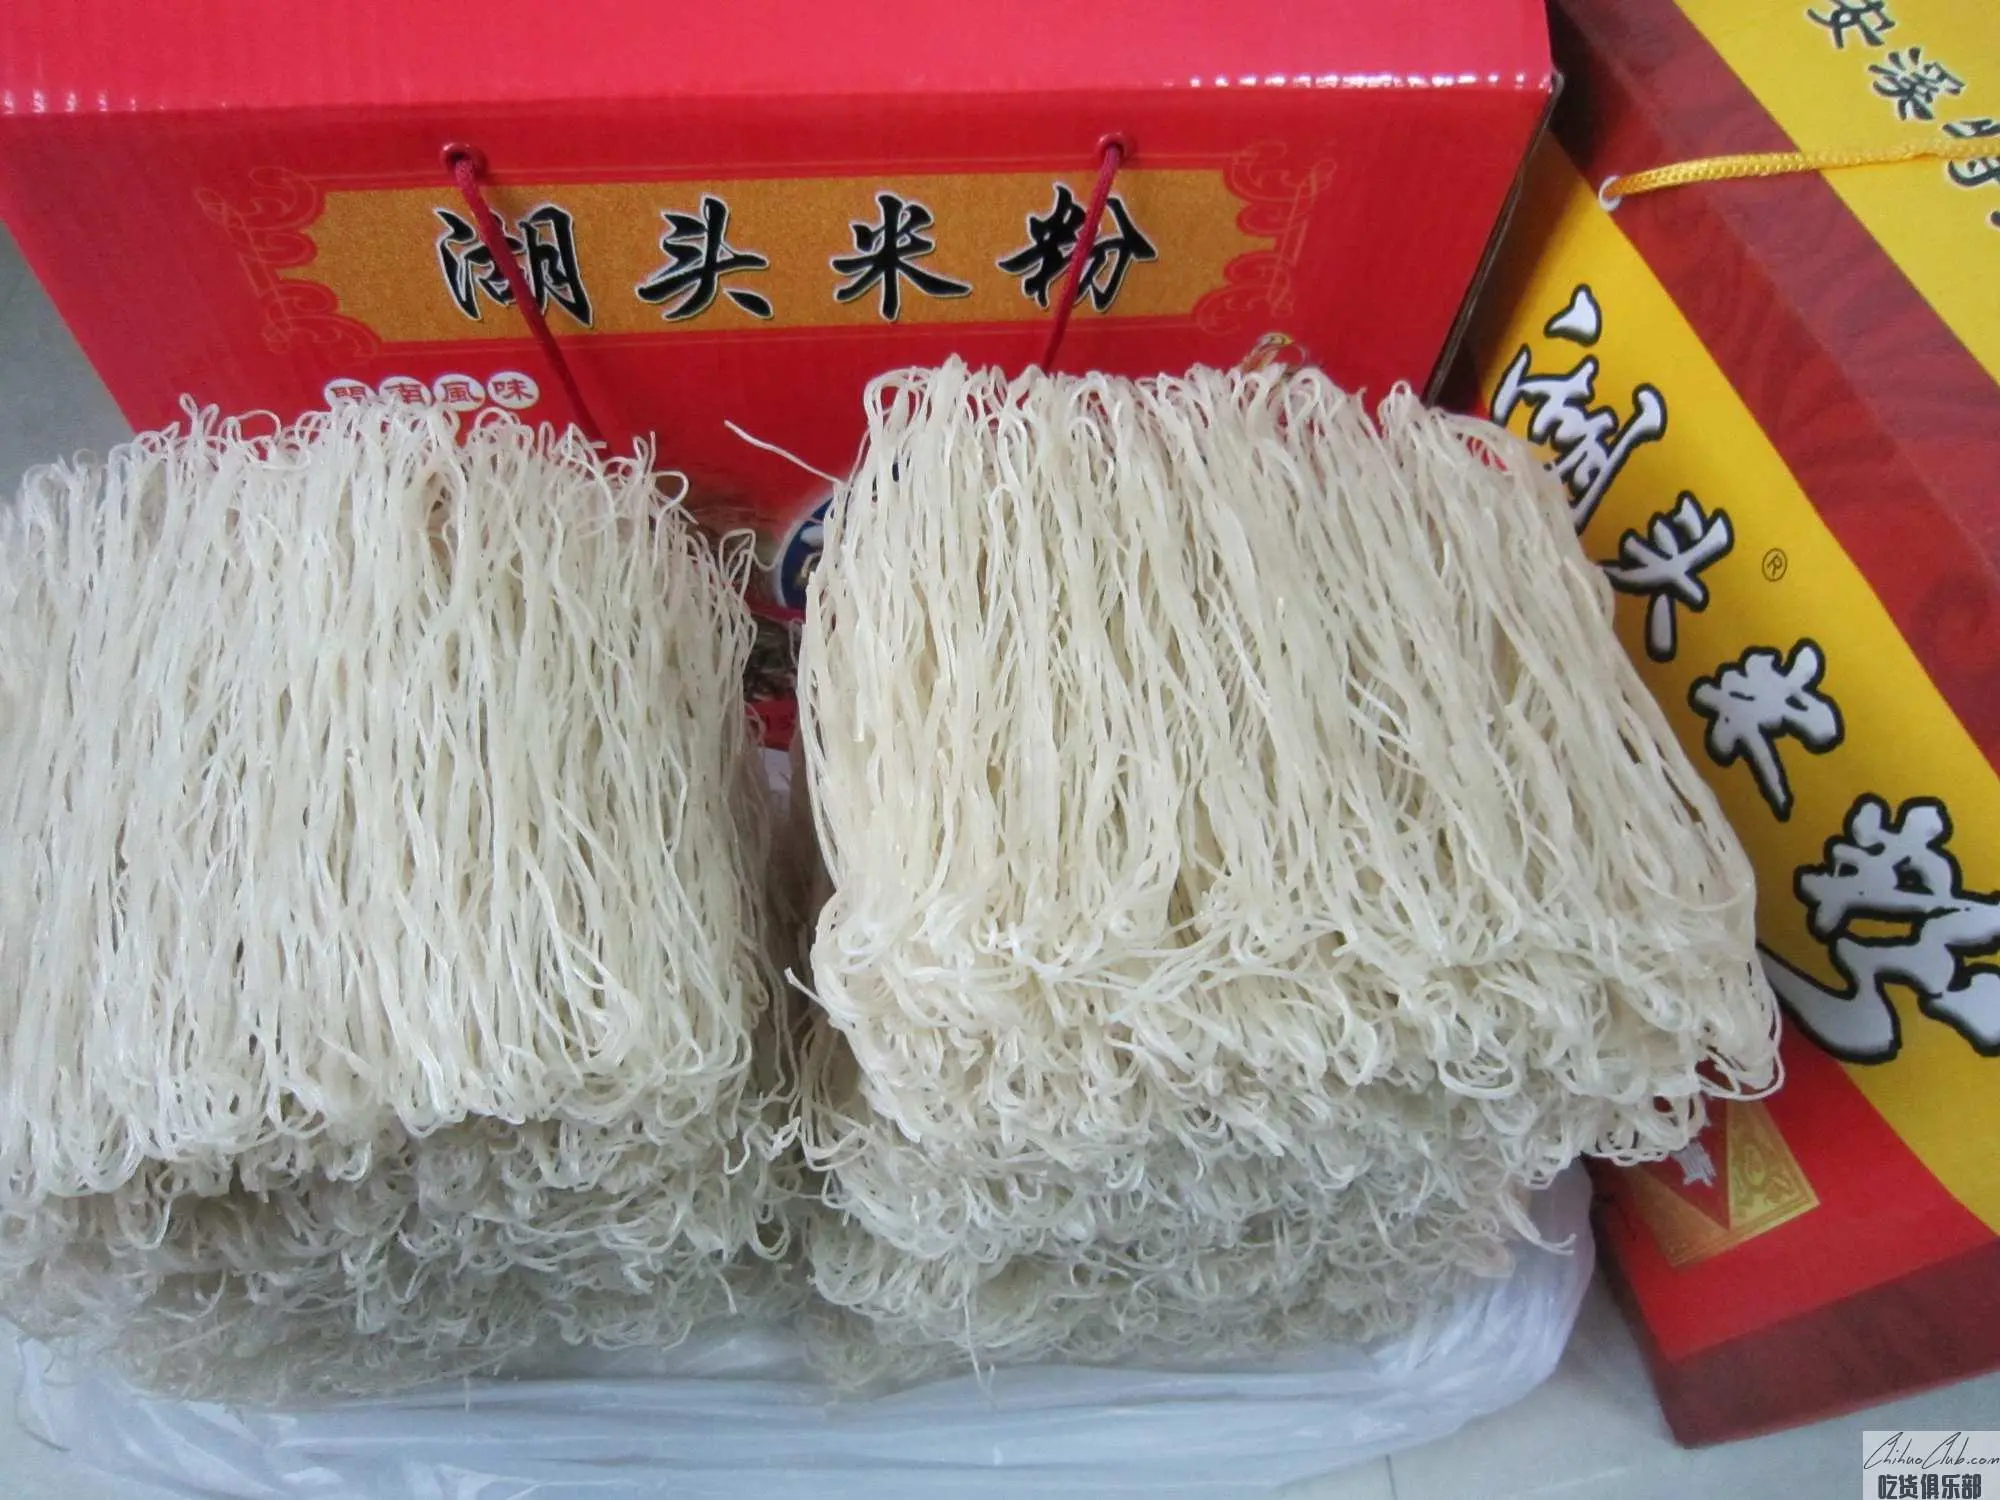 Hutou Rice Noodles